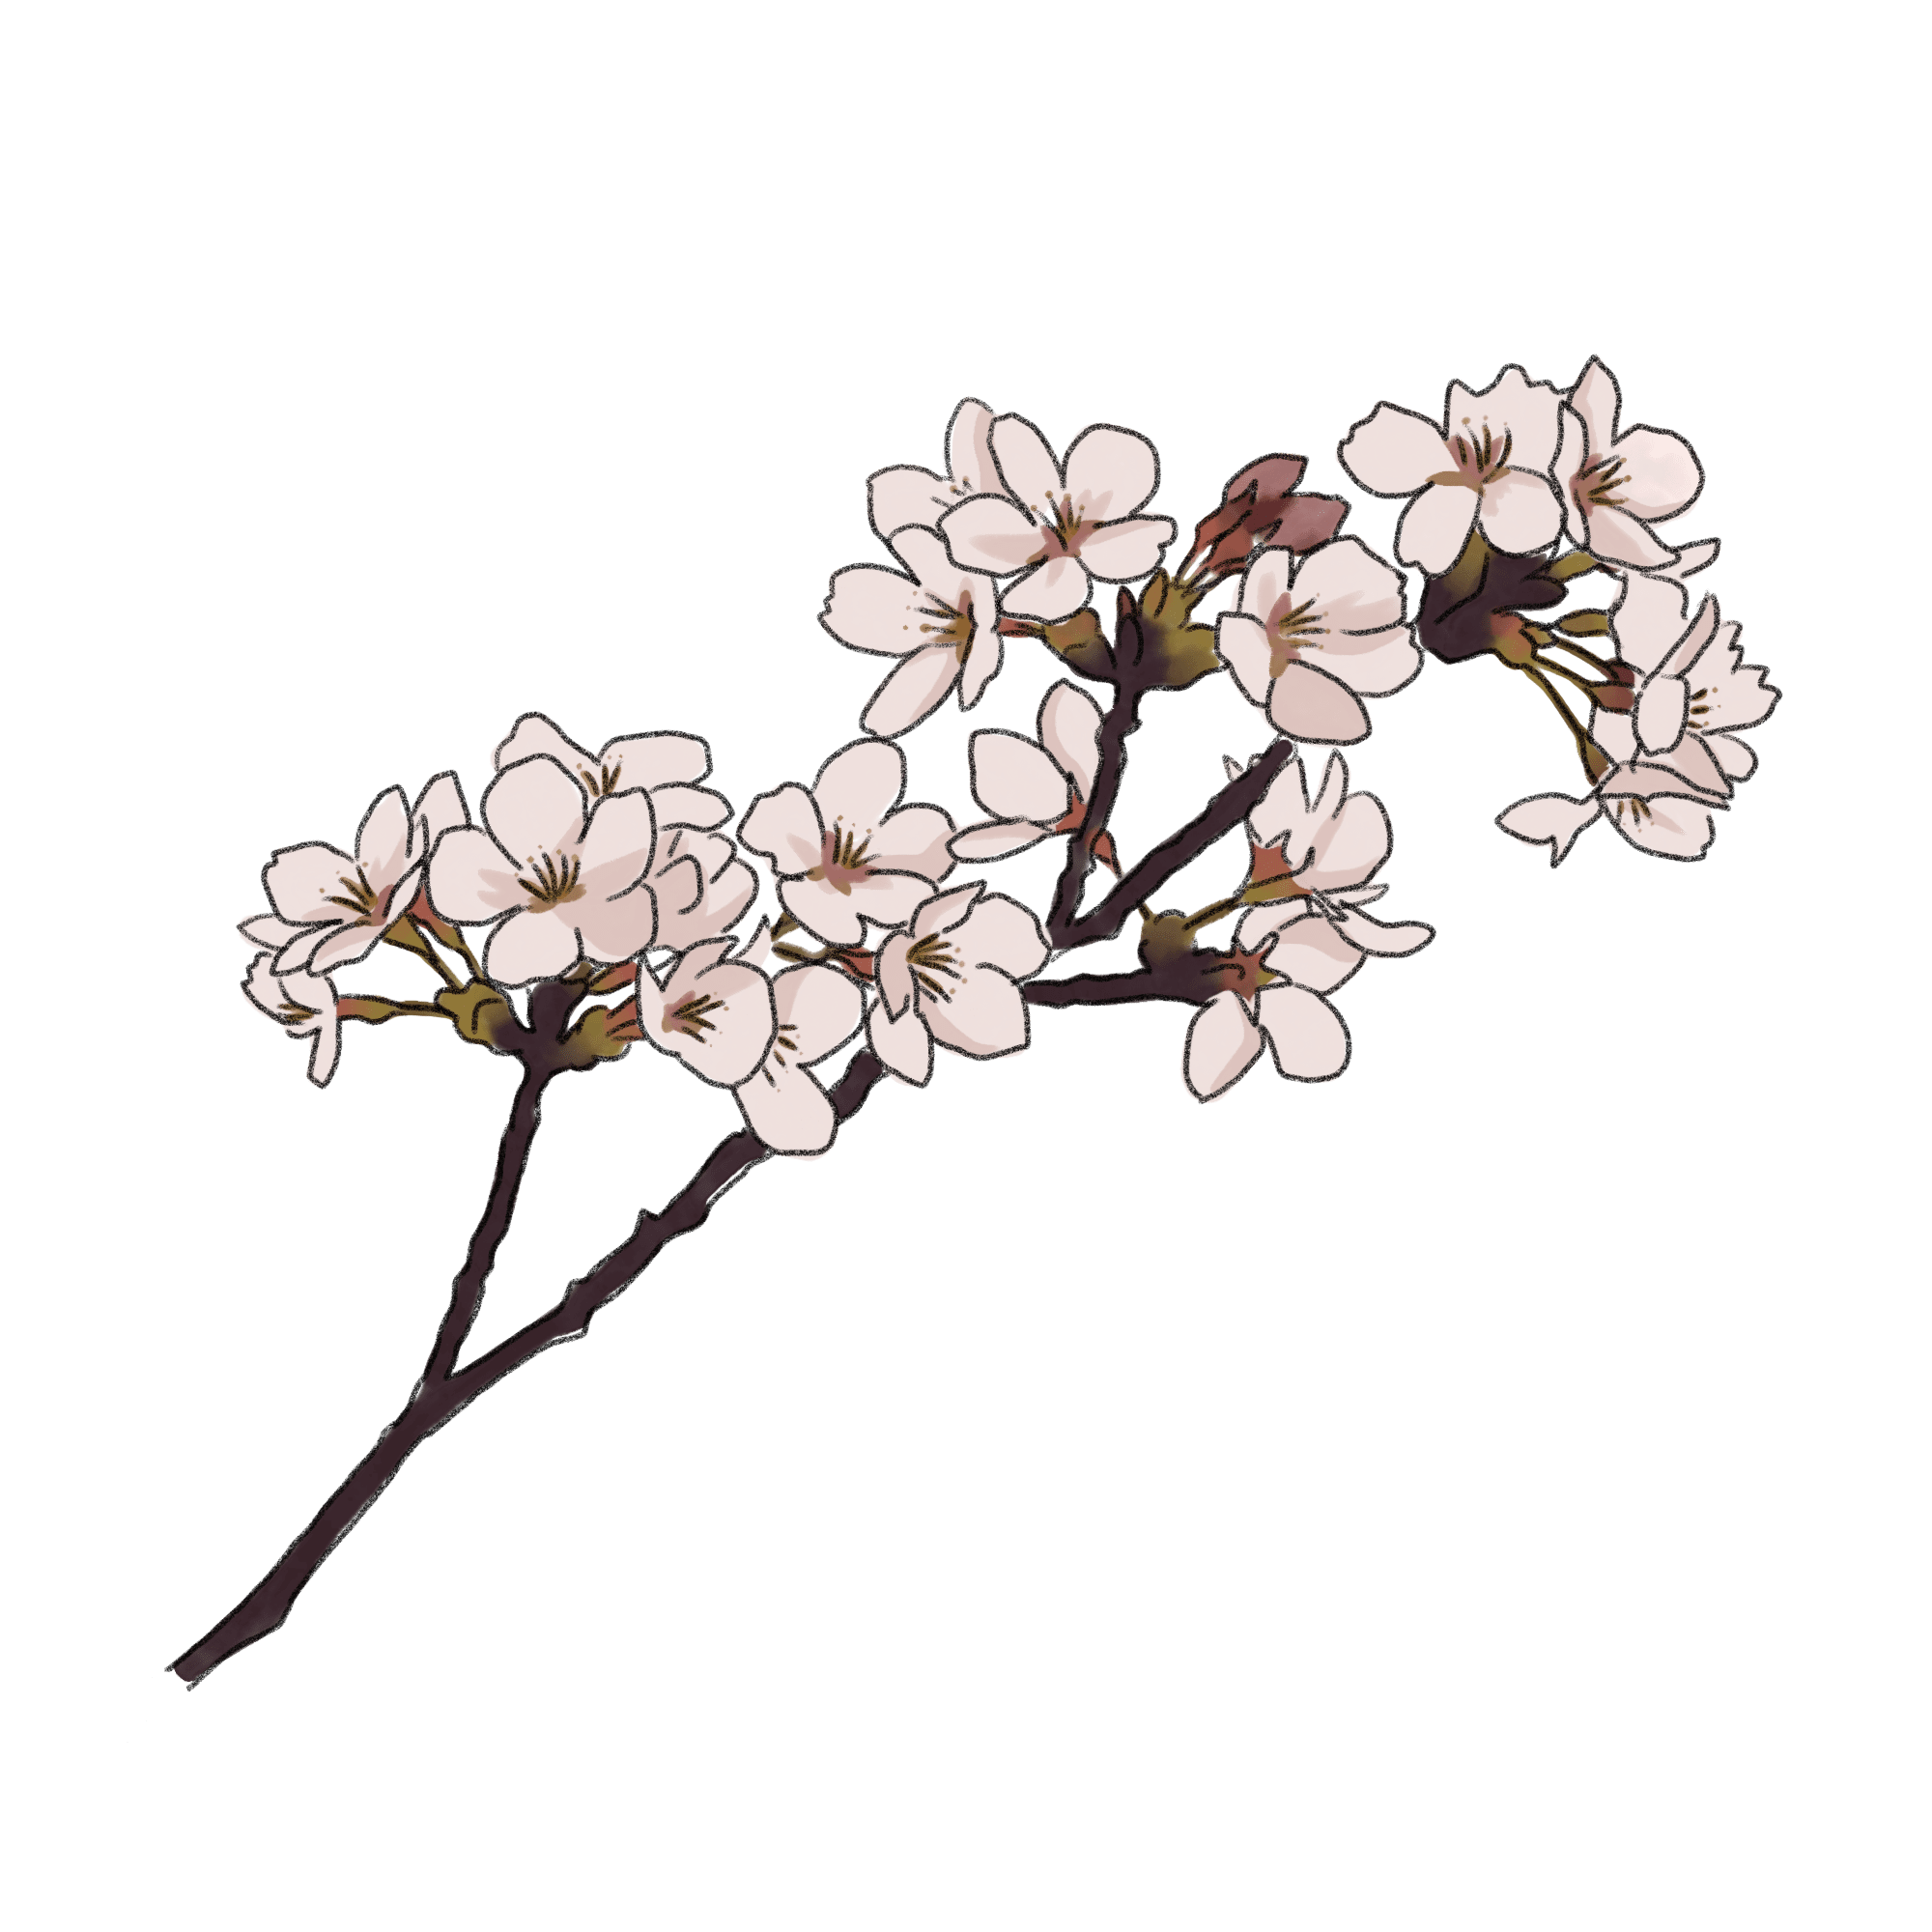 桜のイラスト 01 フリー素材 Greenstock40